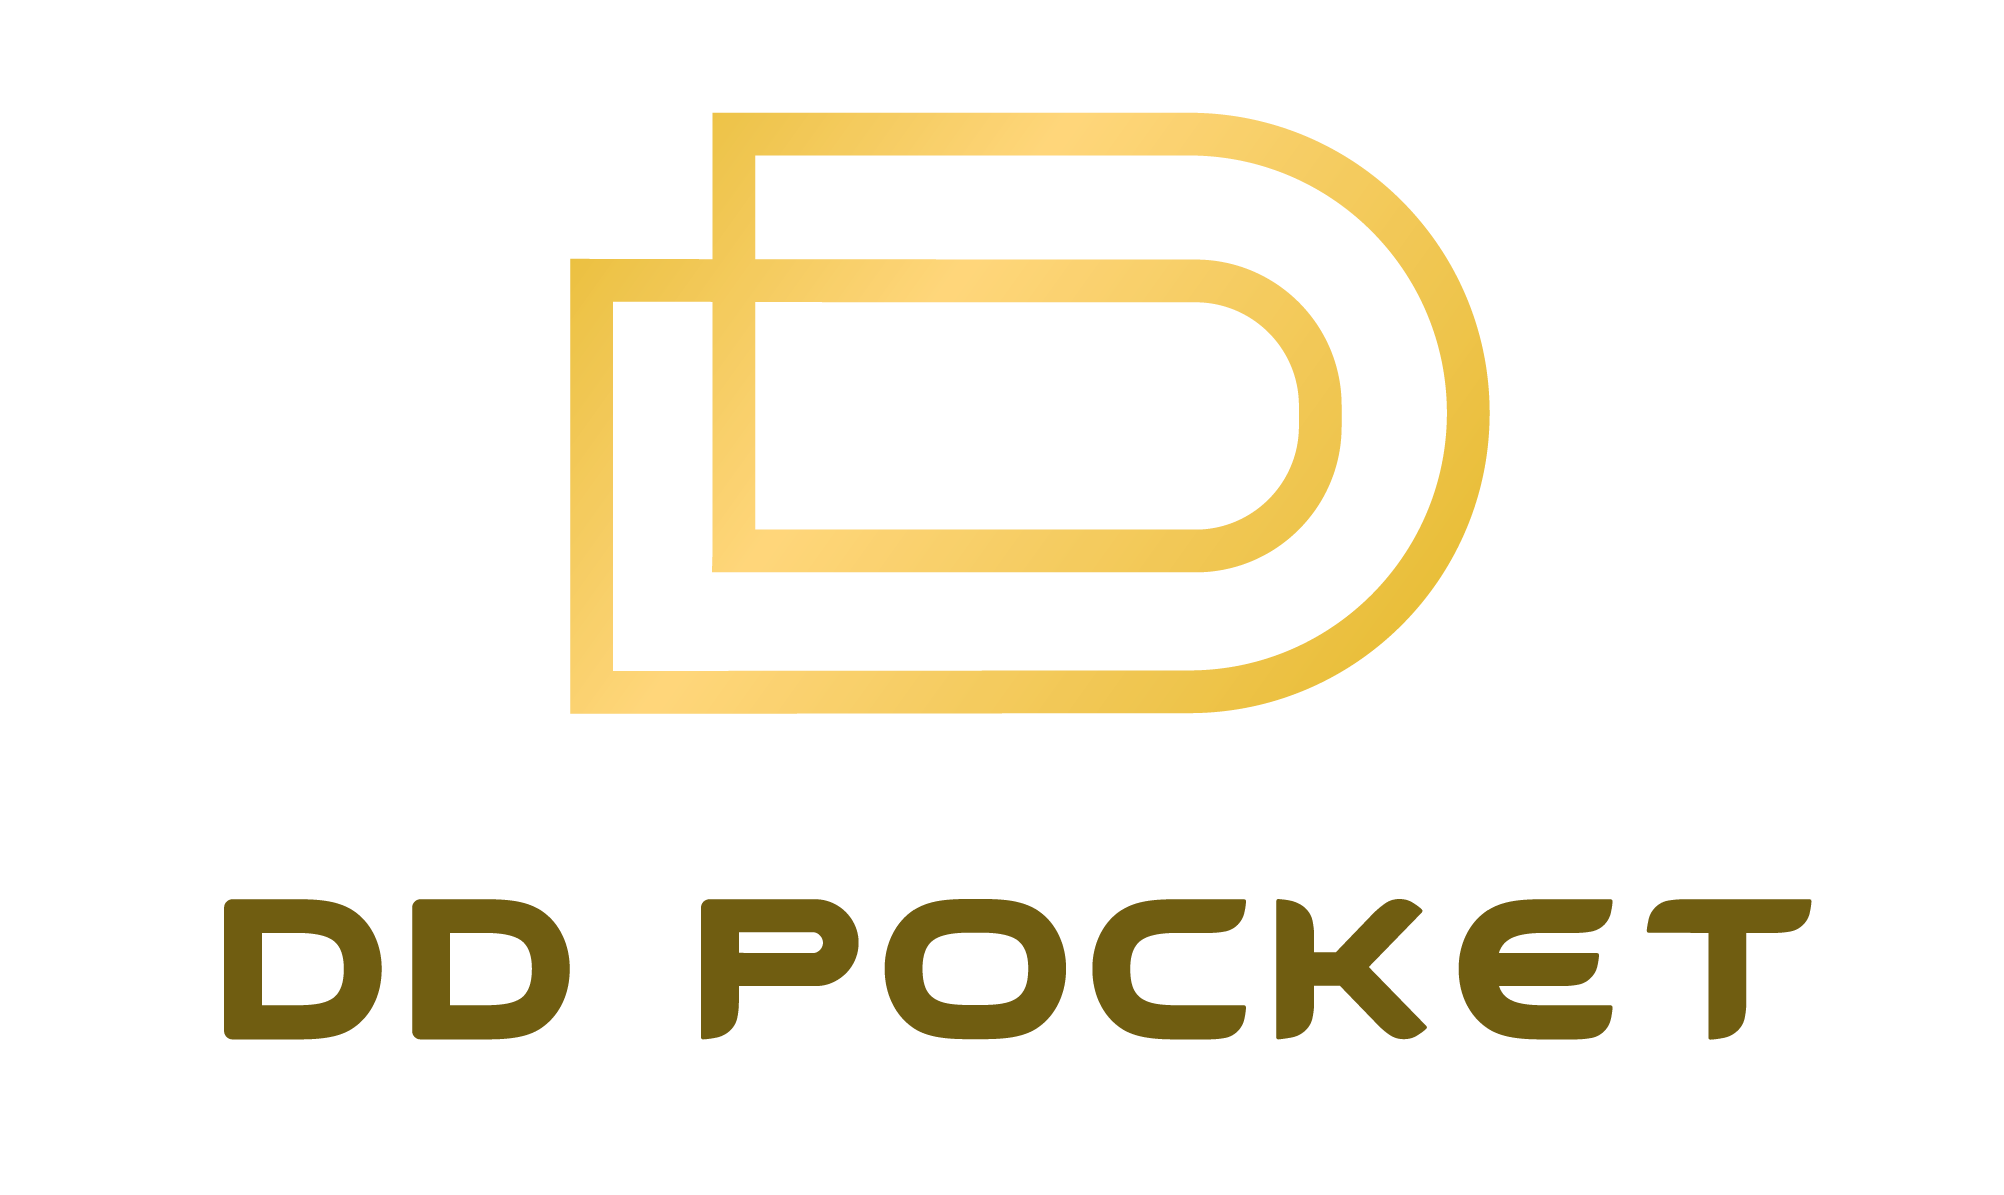 DD Pocket